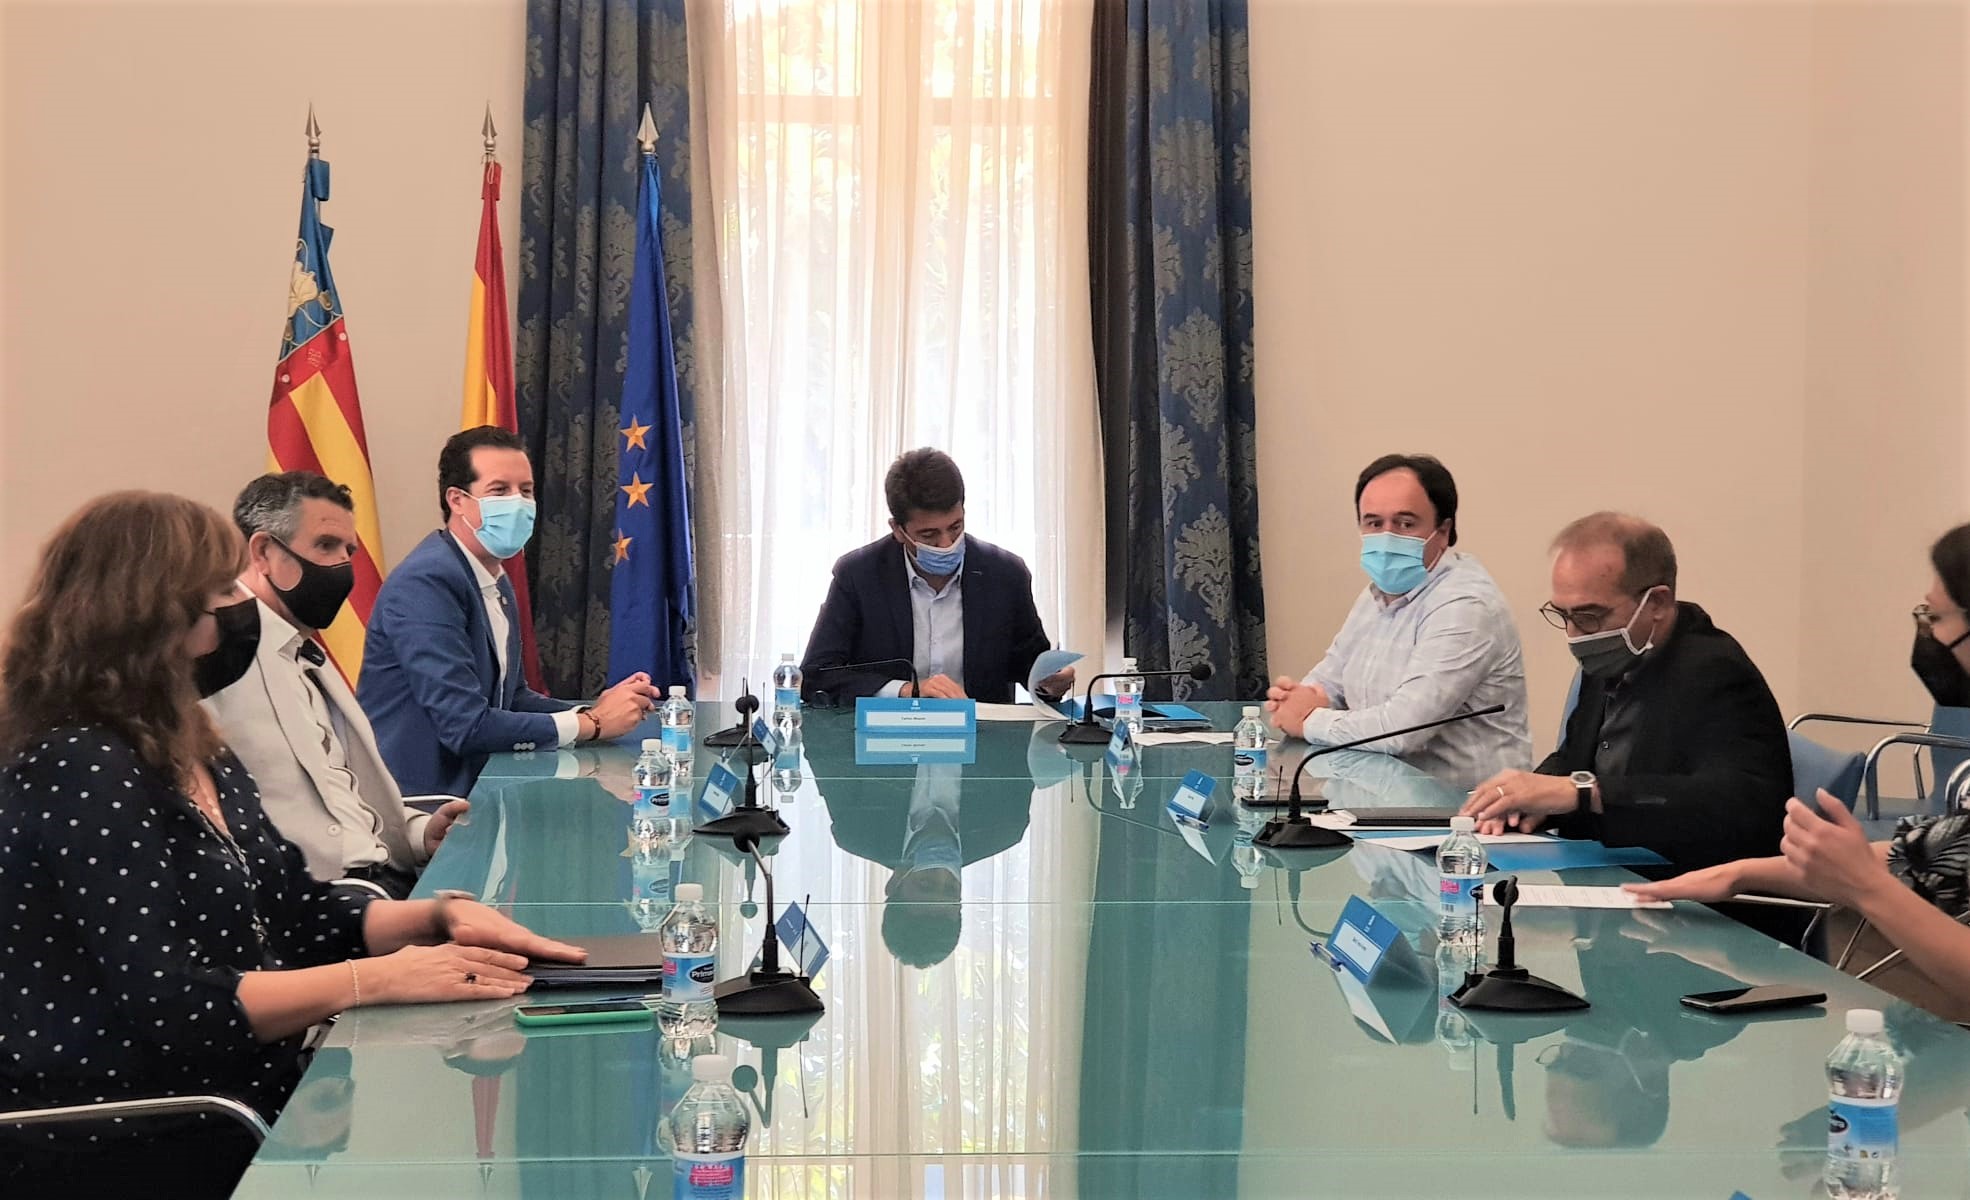 El Ayuntamiento de Elda y la Diputación ponen en marcha la Comisión Mixta que redactará el Plan Director del yacimiento de El Monastil